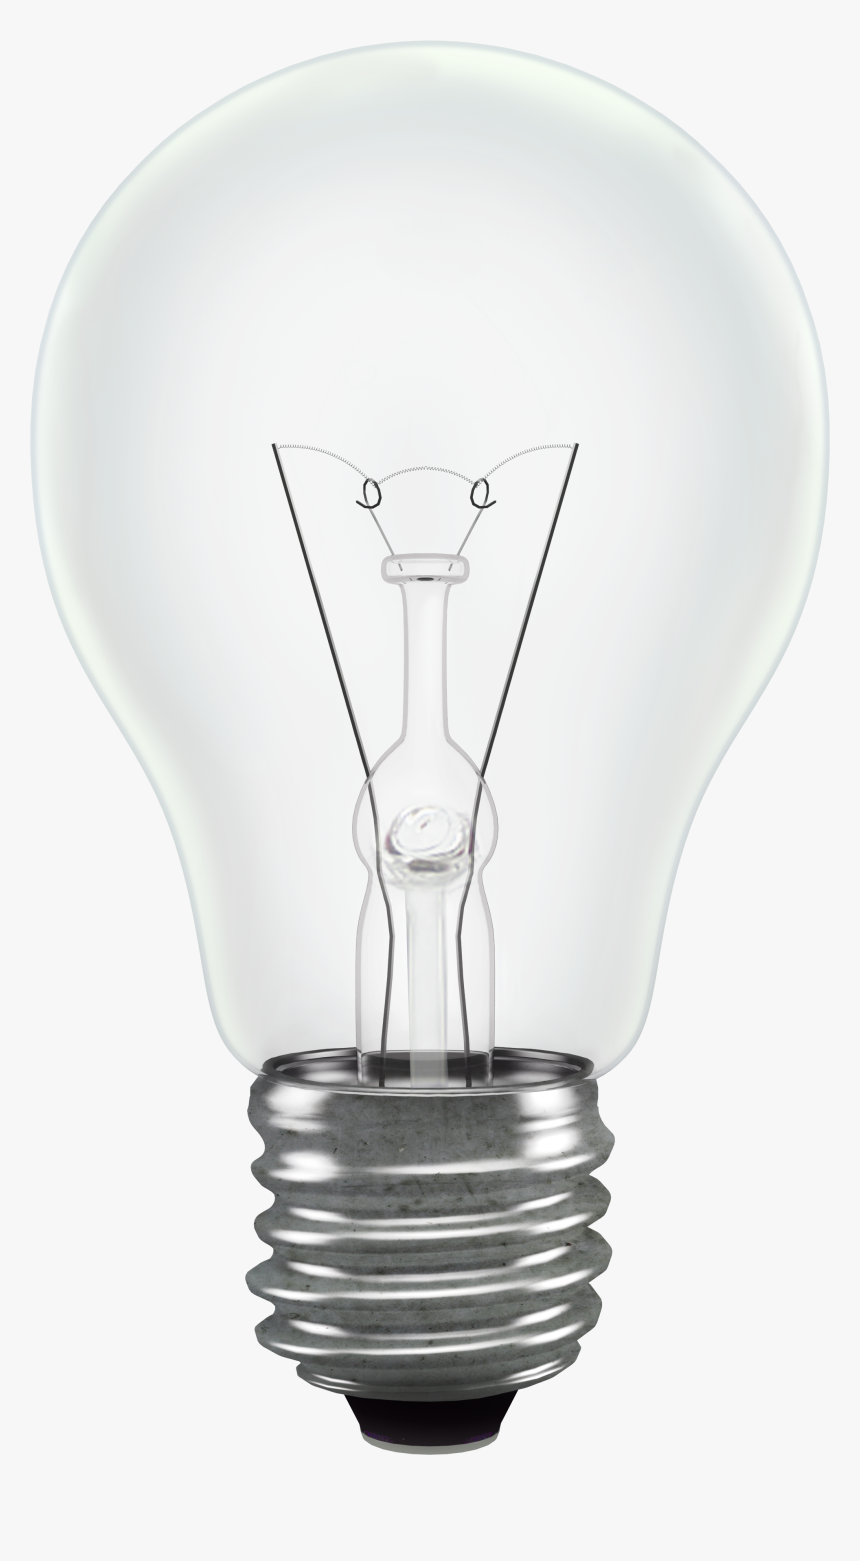 Bulb Png Image Light - Light Bulb Transparent Background, Png Download, Free Download